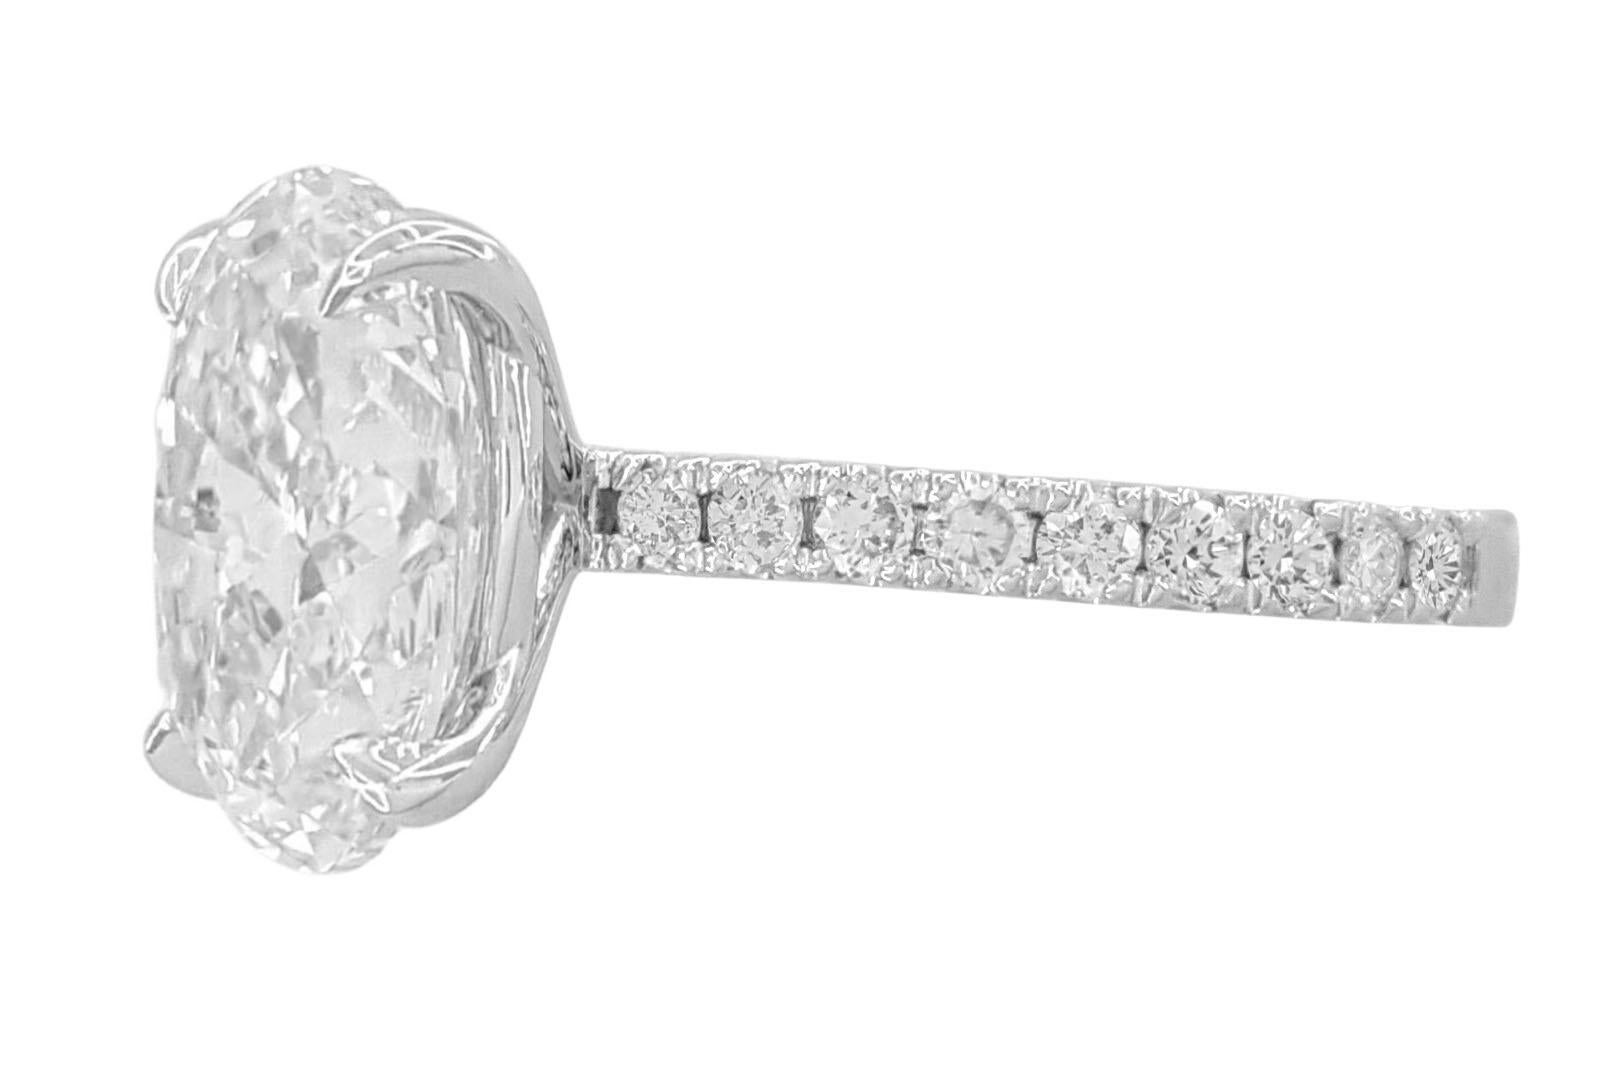 Taille ovale GIA 4 Ct E Color VS Clarity Oval Brilliant Cut Diamond 18K White Gold Ring  en vente